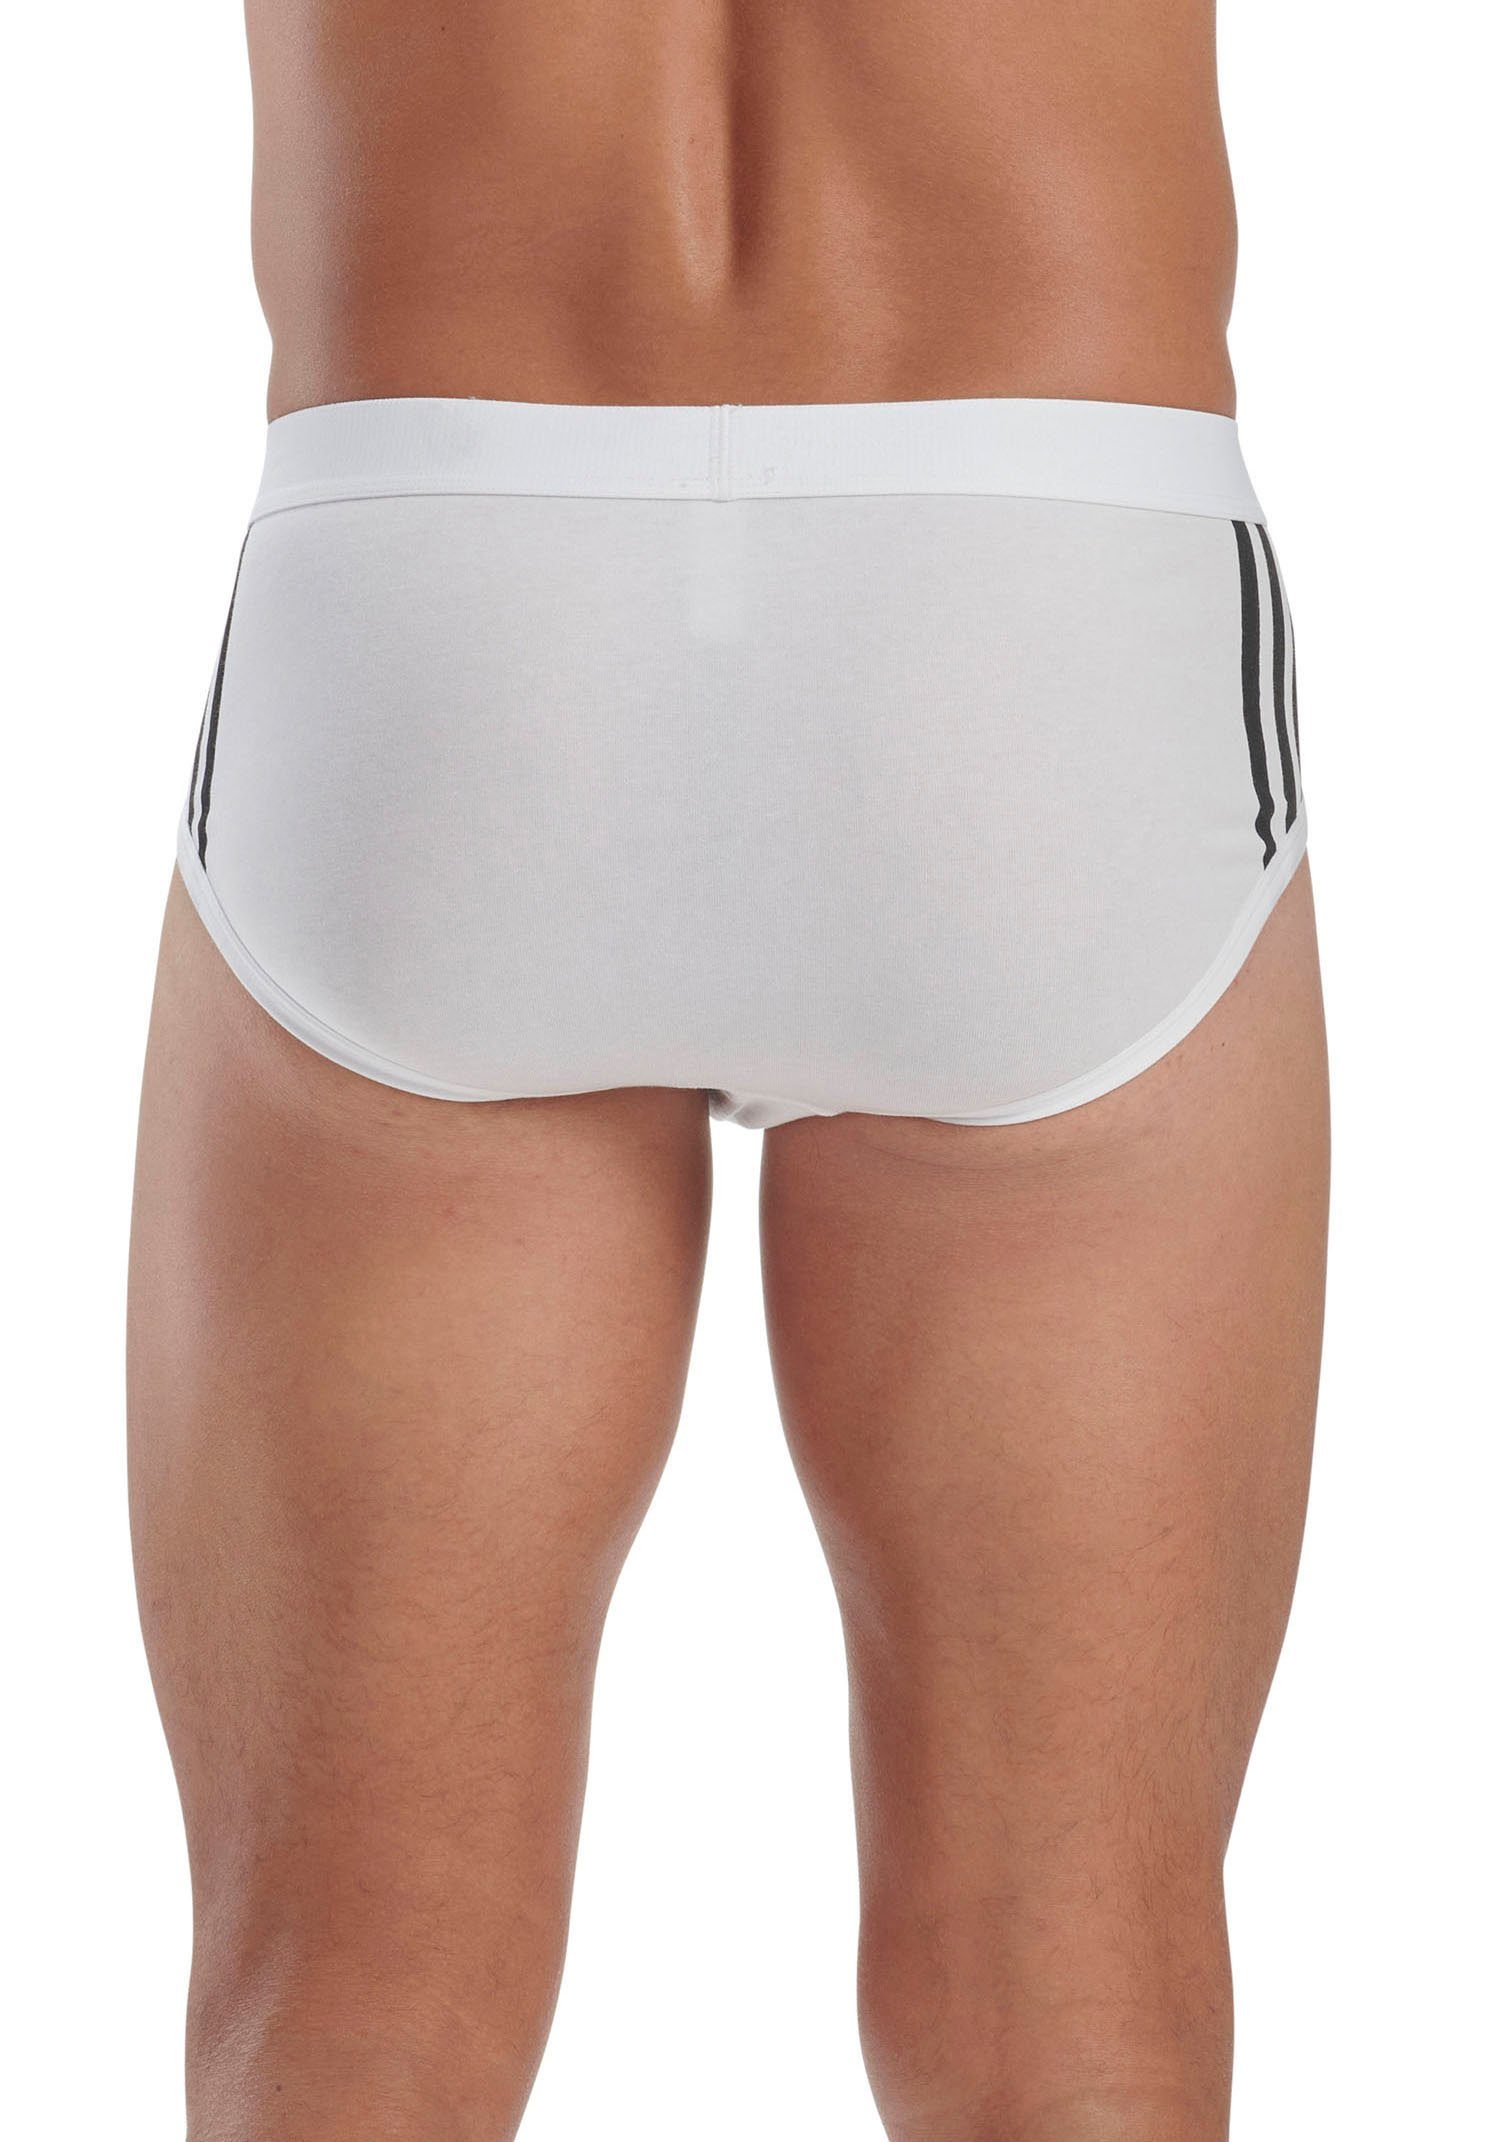 adidas mit schwarz-grau-weiß Sportswear Nahtverarbeitung weicher (3er-Pack) Unterhose Slip